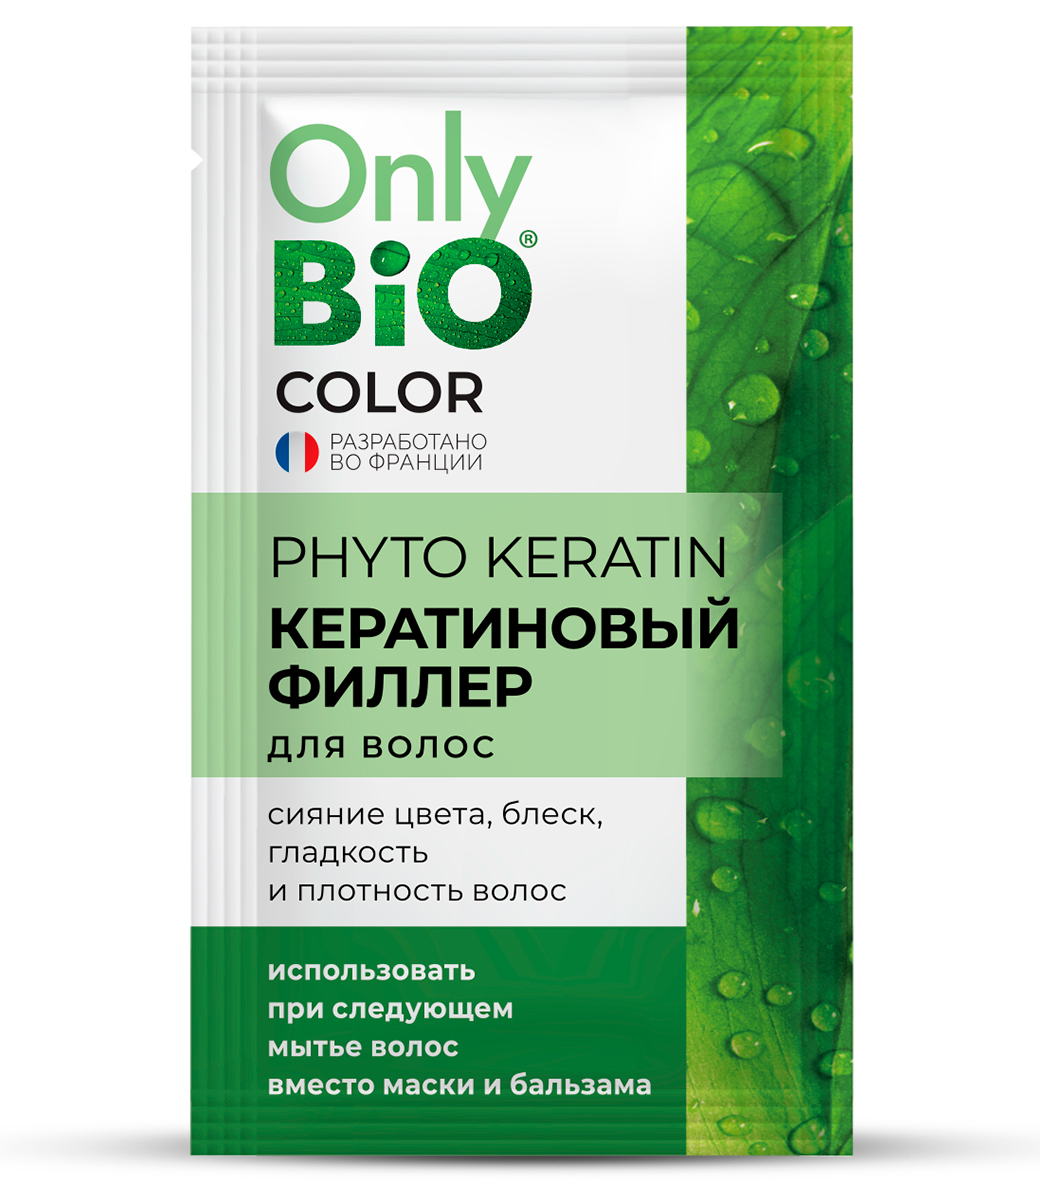 картинка Only Bio Стойкая крем-краска для волос Кератиновая, тон 5.46 Медно-рыжий